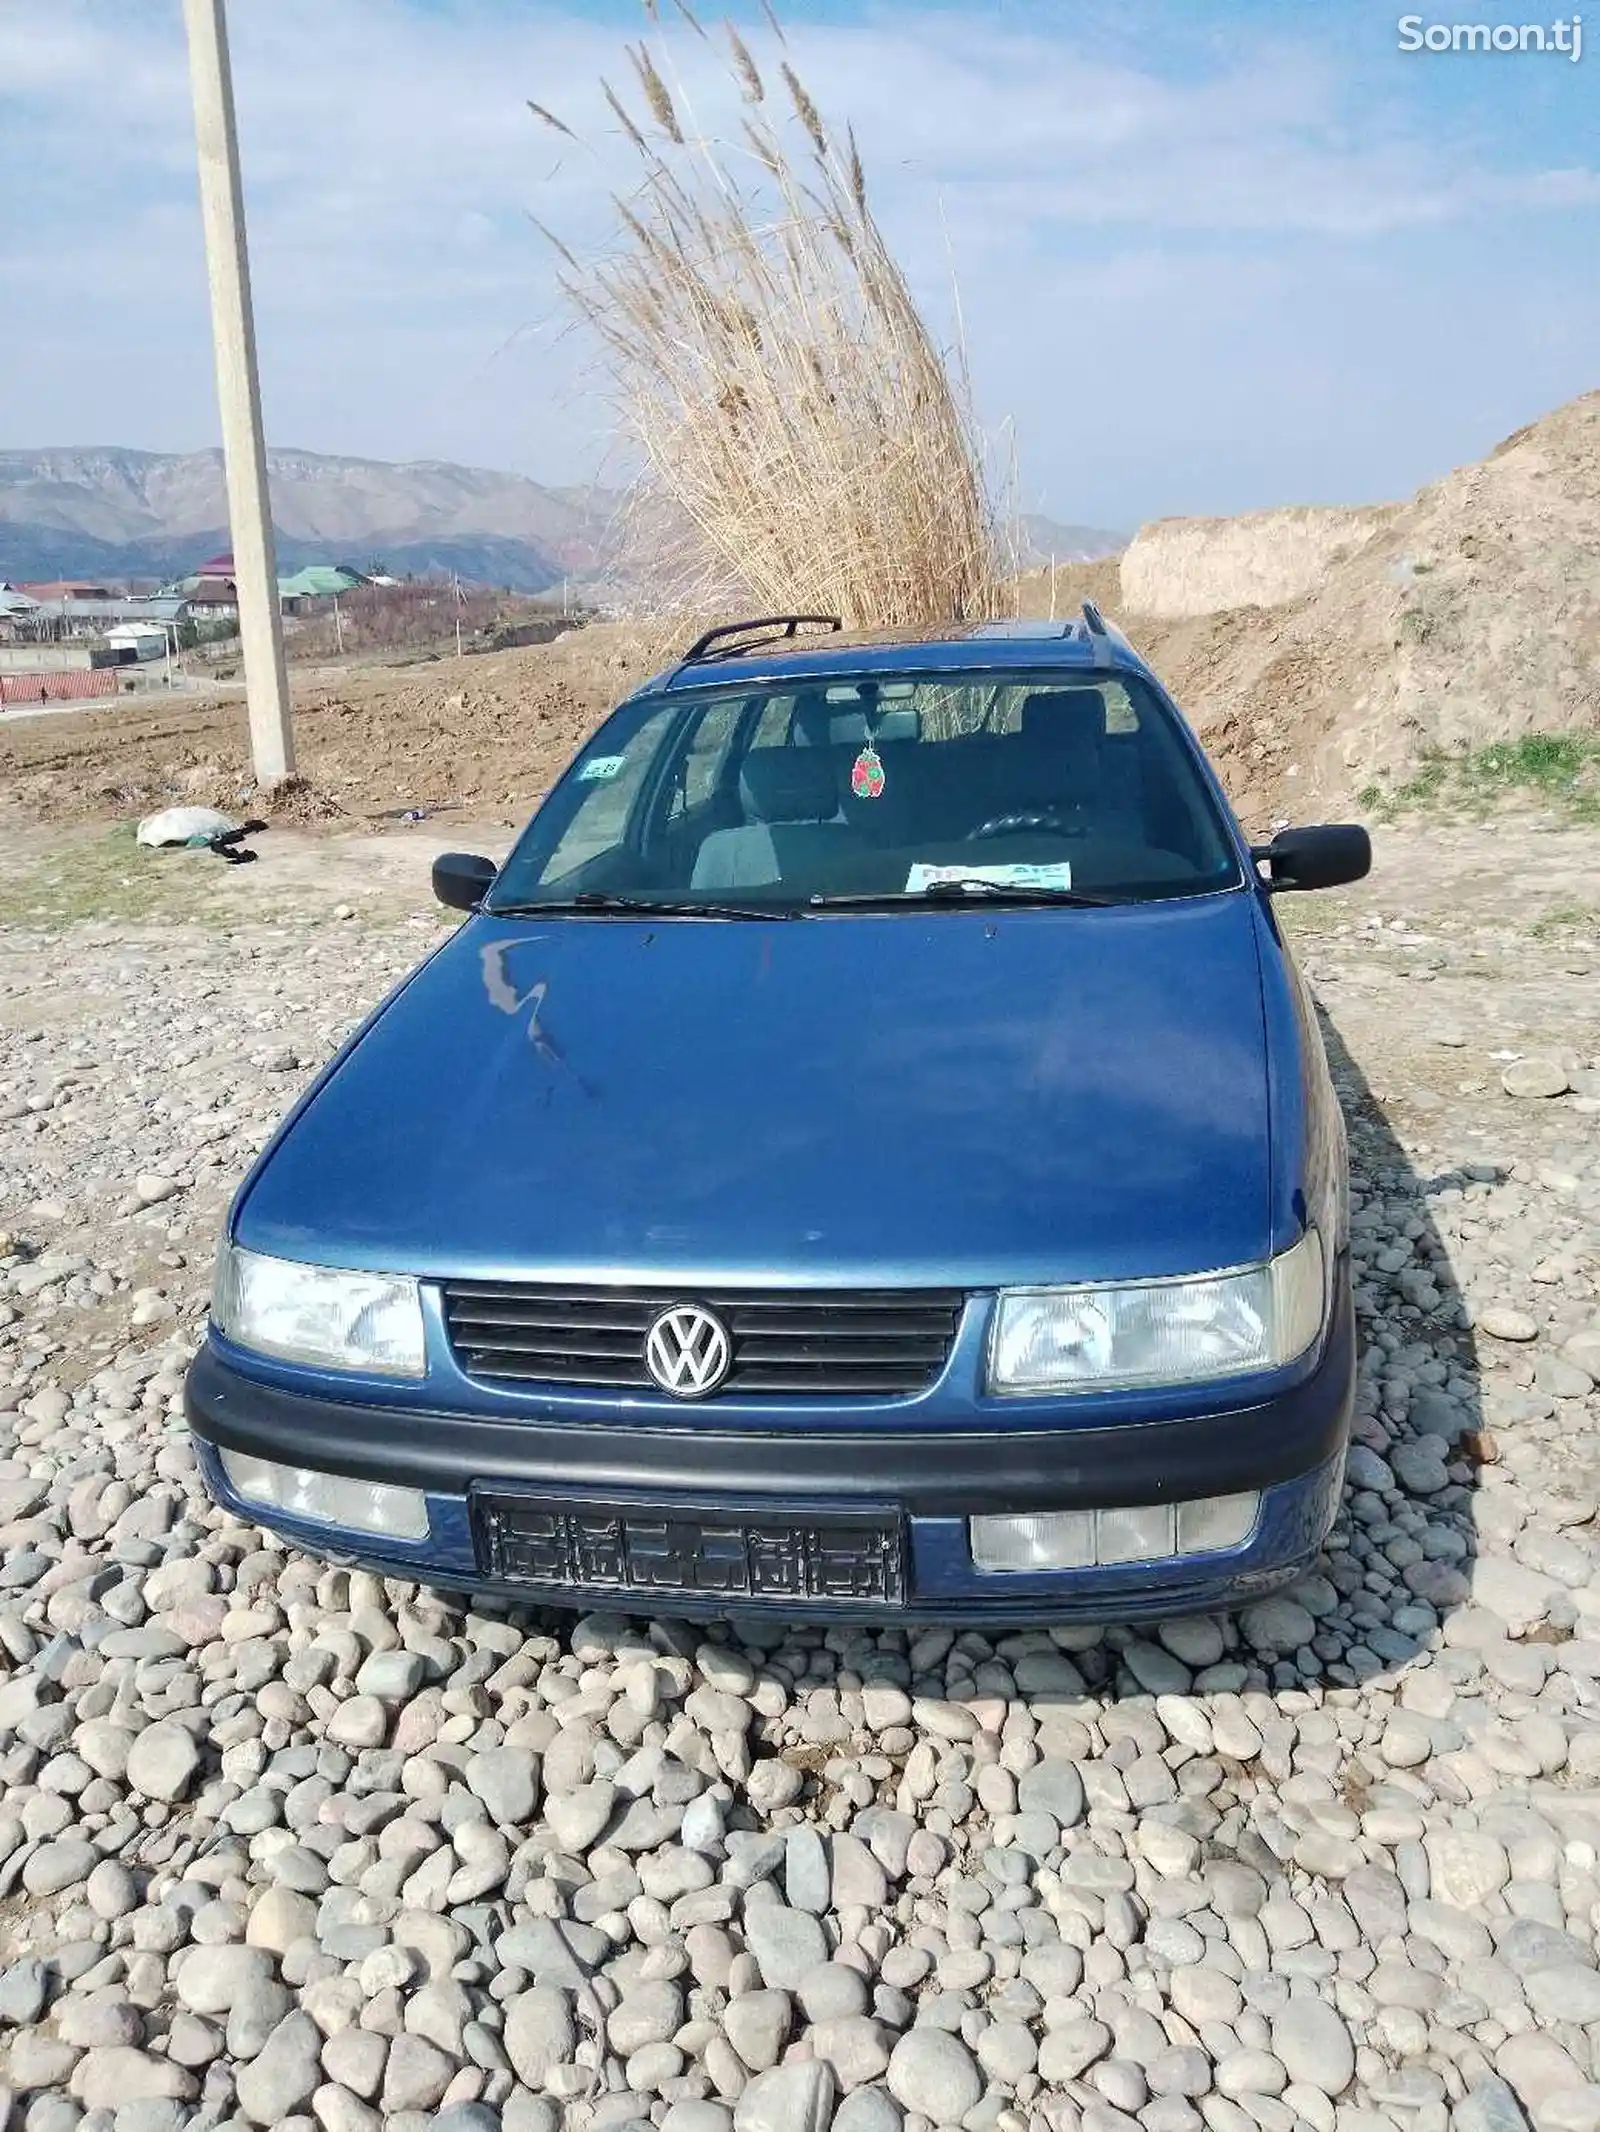 Volkswagen Passat, 1993-2